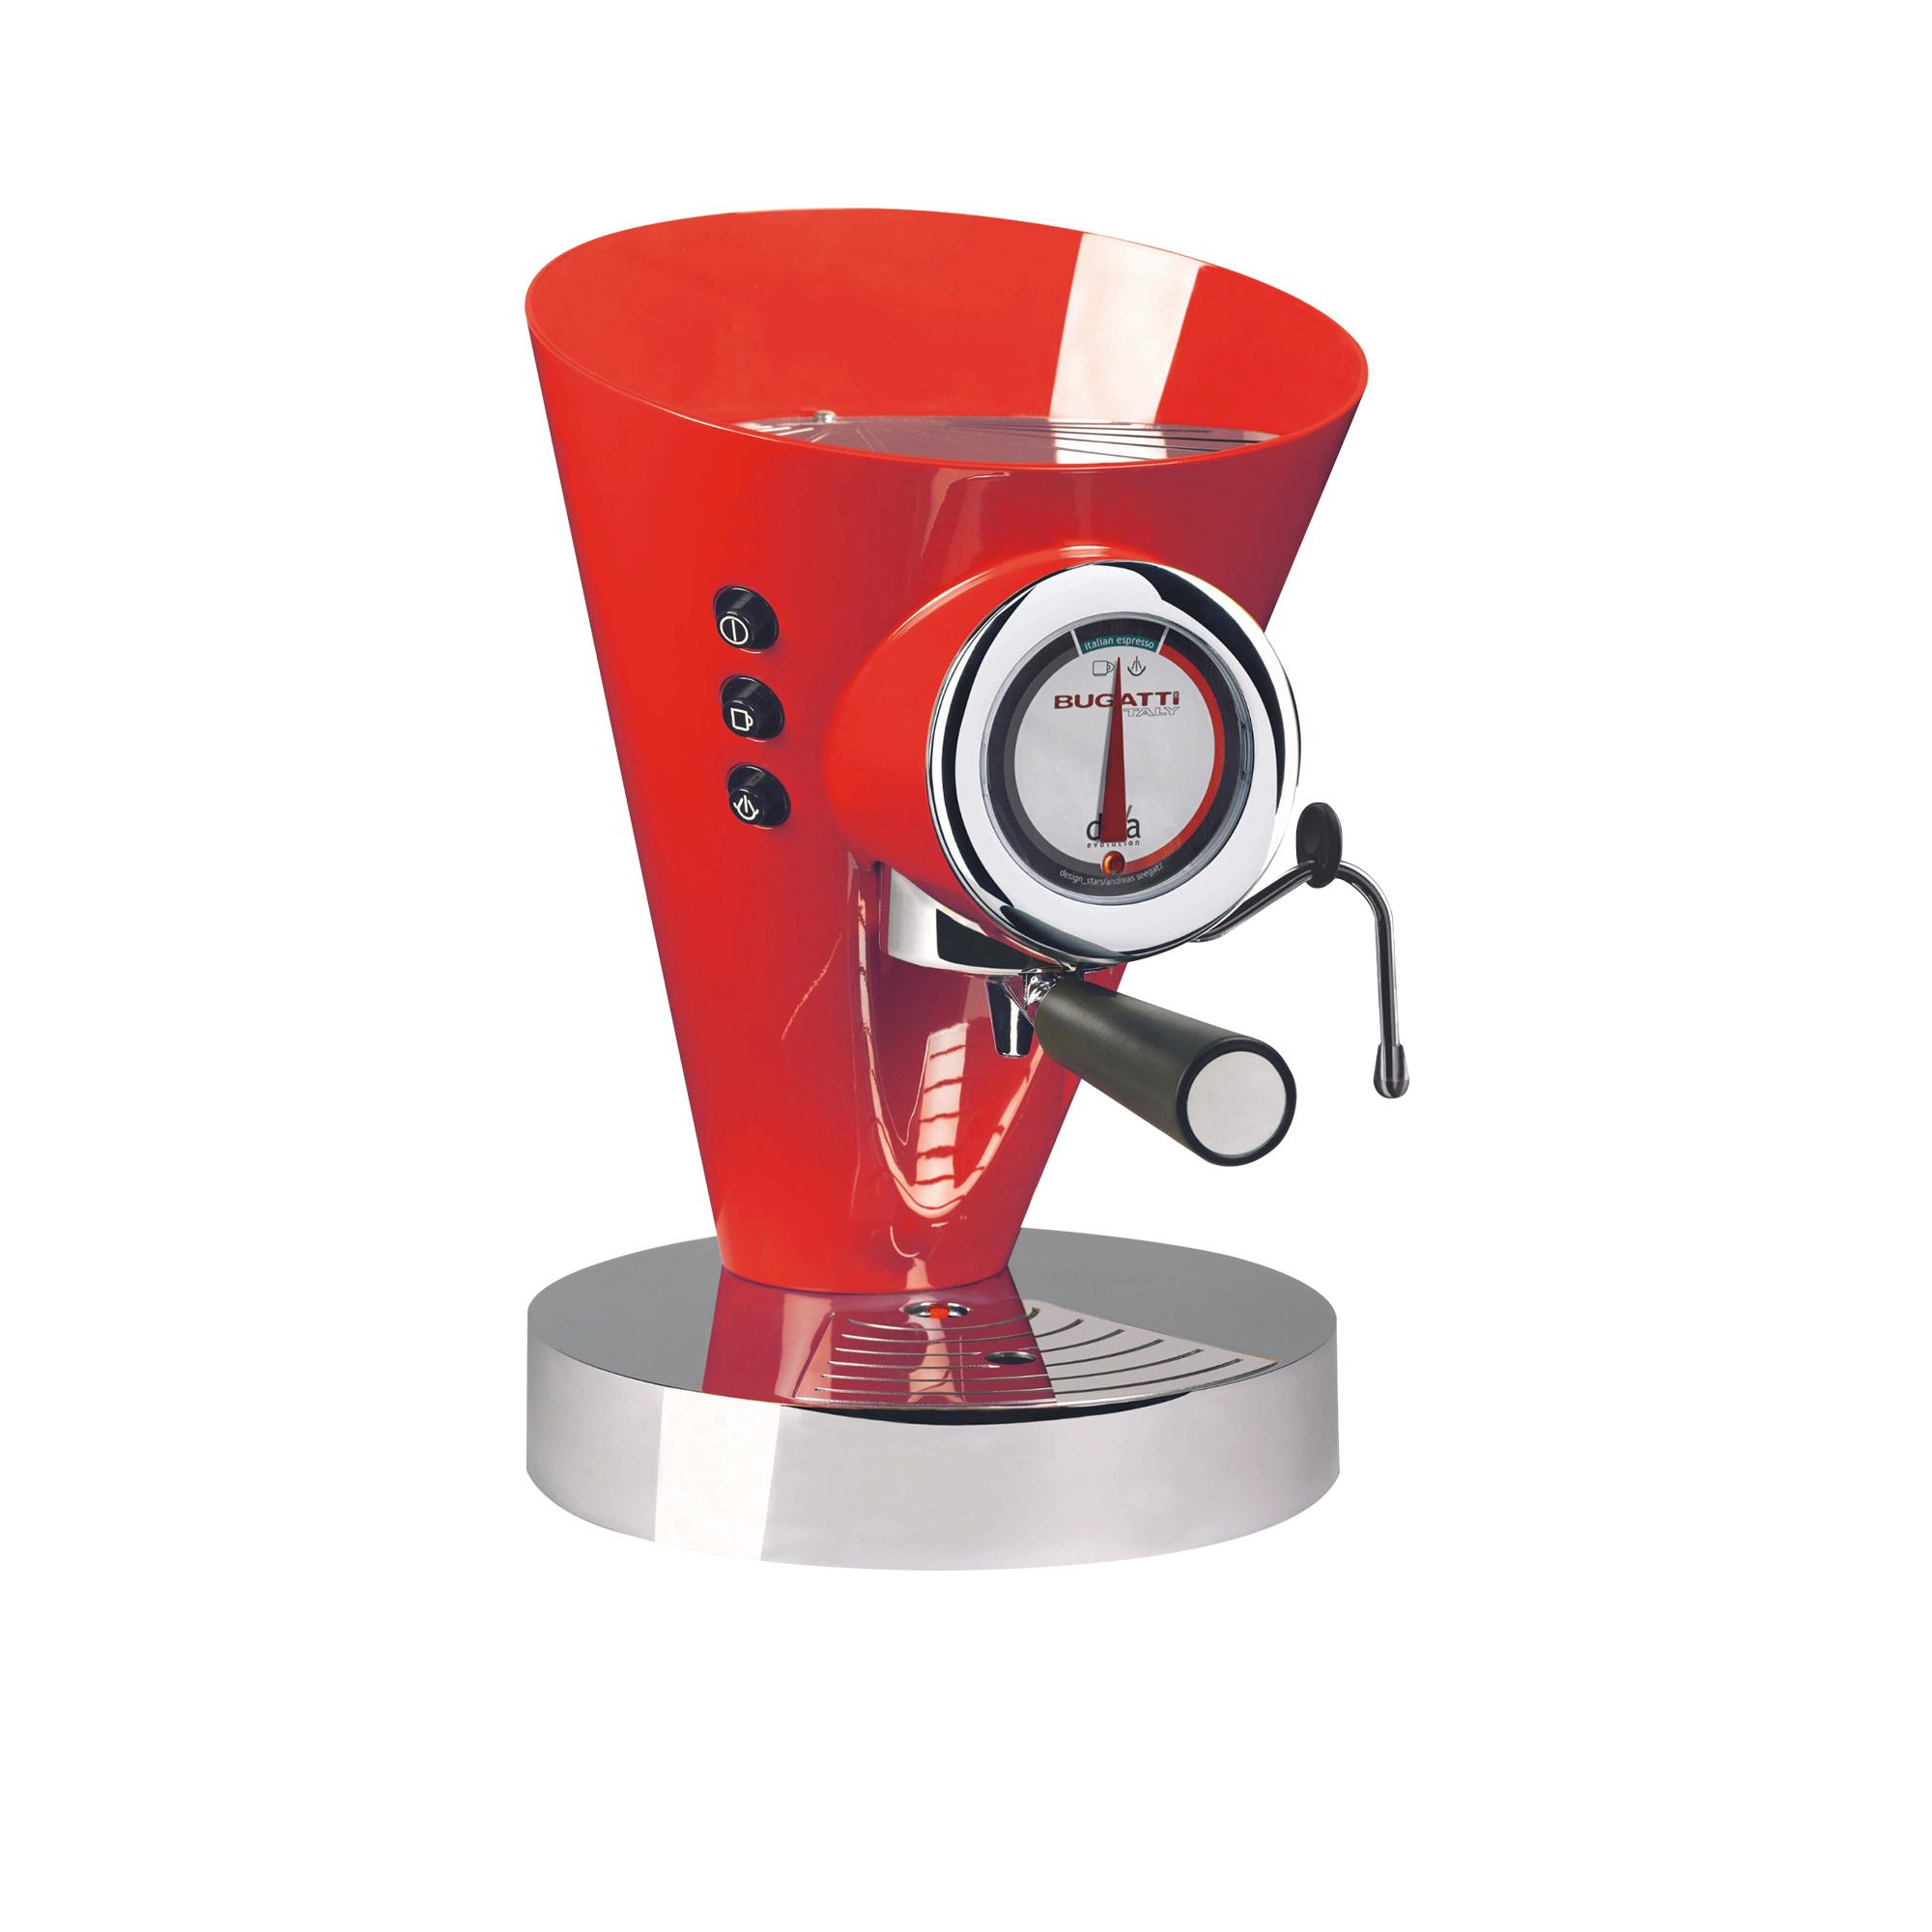 Bugatti Diva Evolution Espresso Coffee Machine Red Image 1